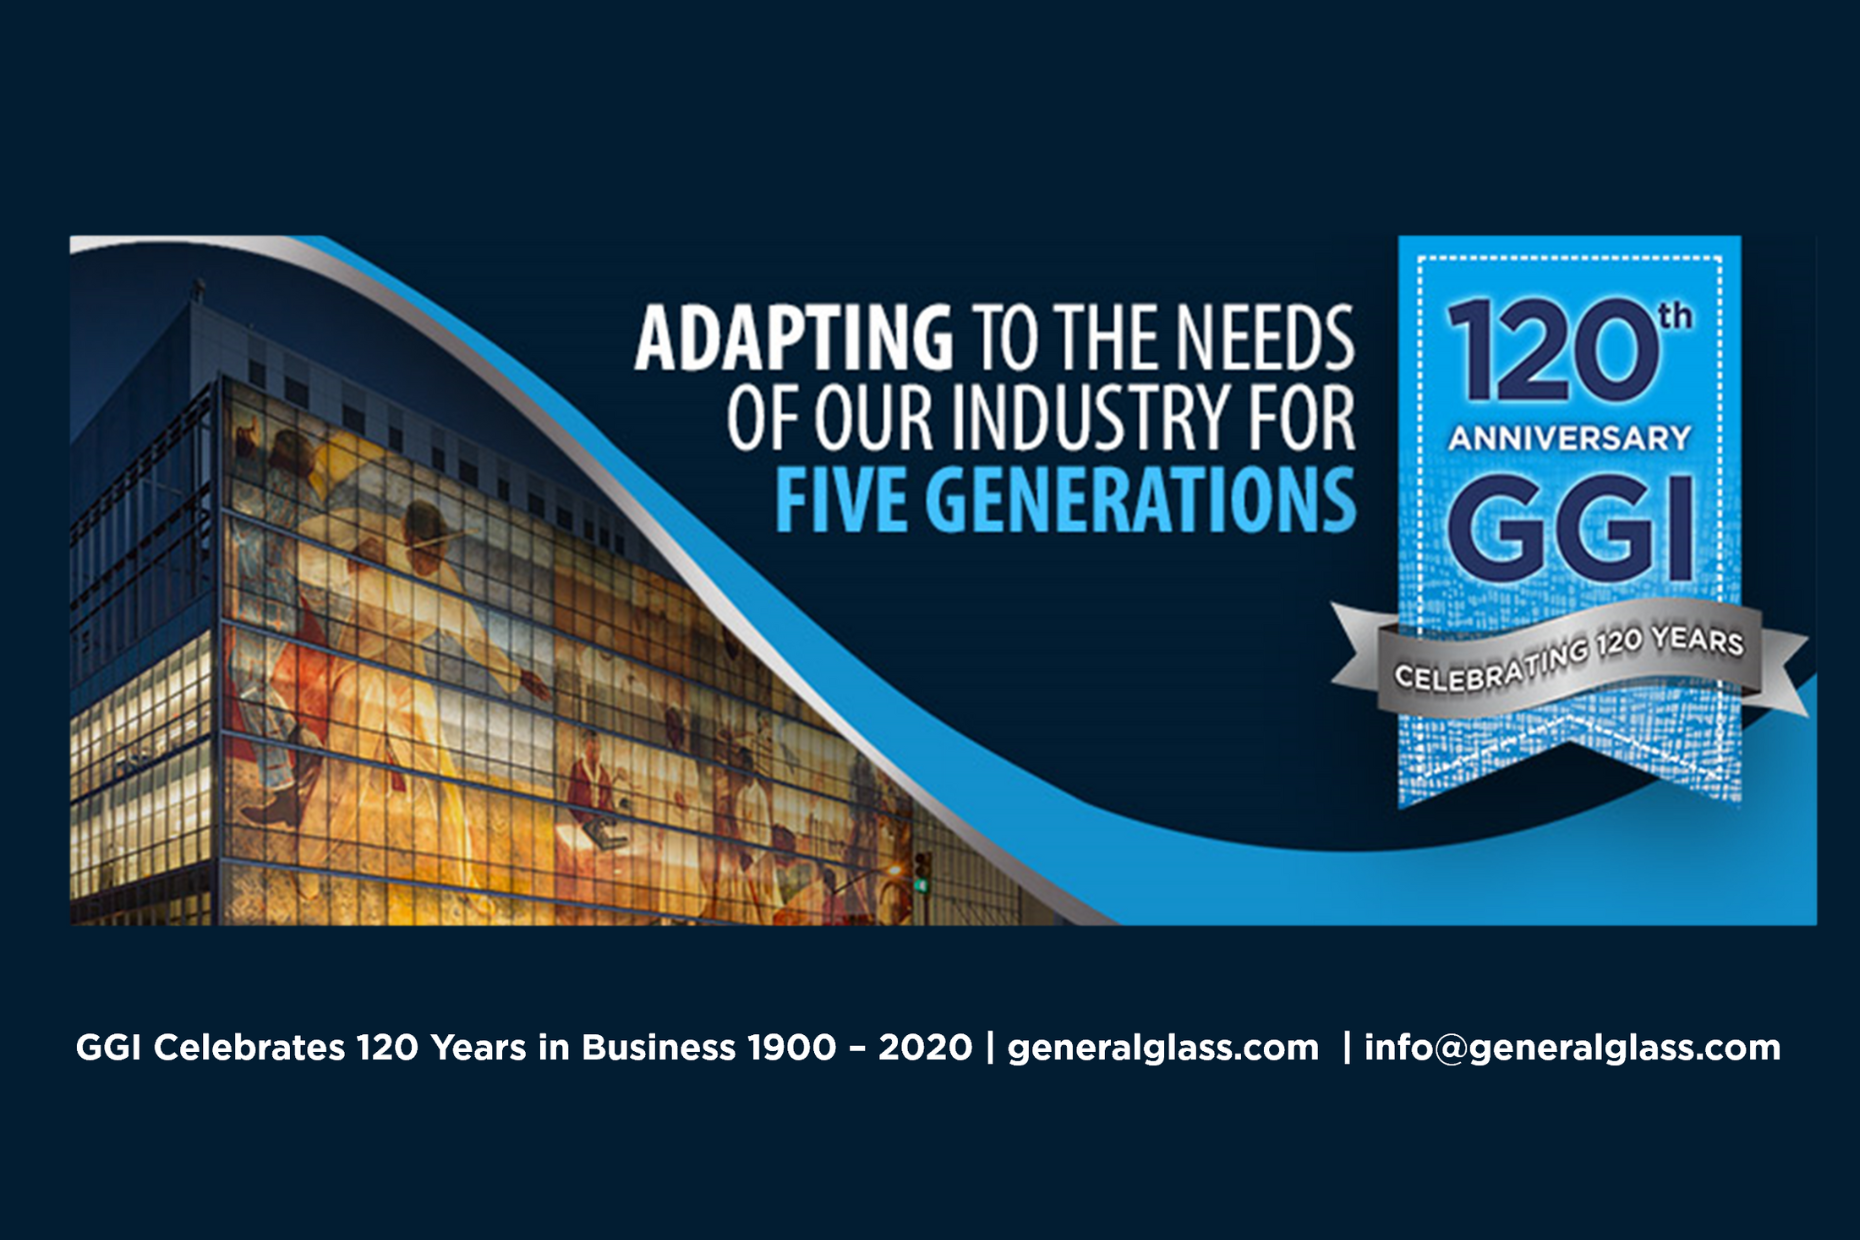 ggi-company-history-120-year-anniversary-2020